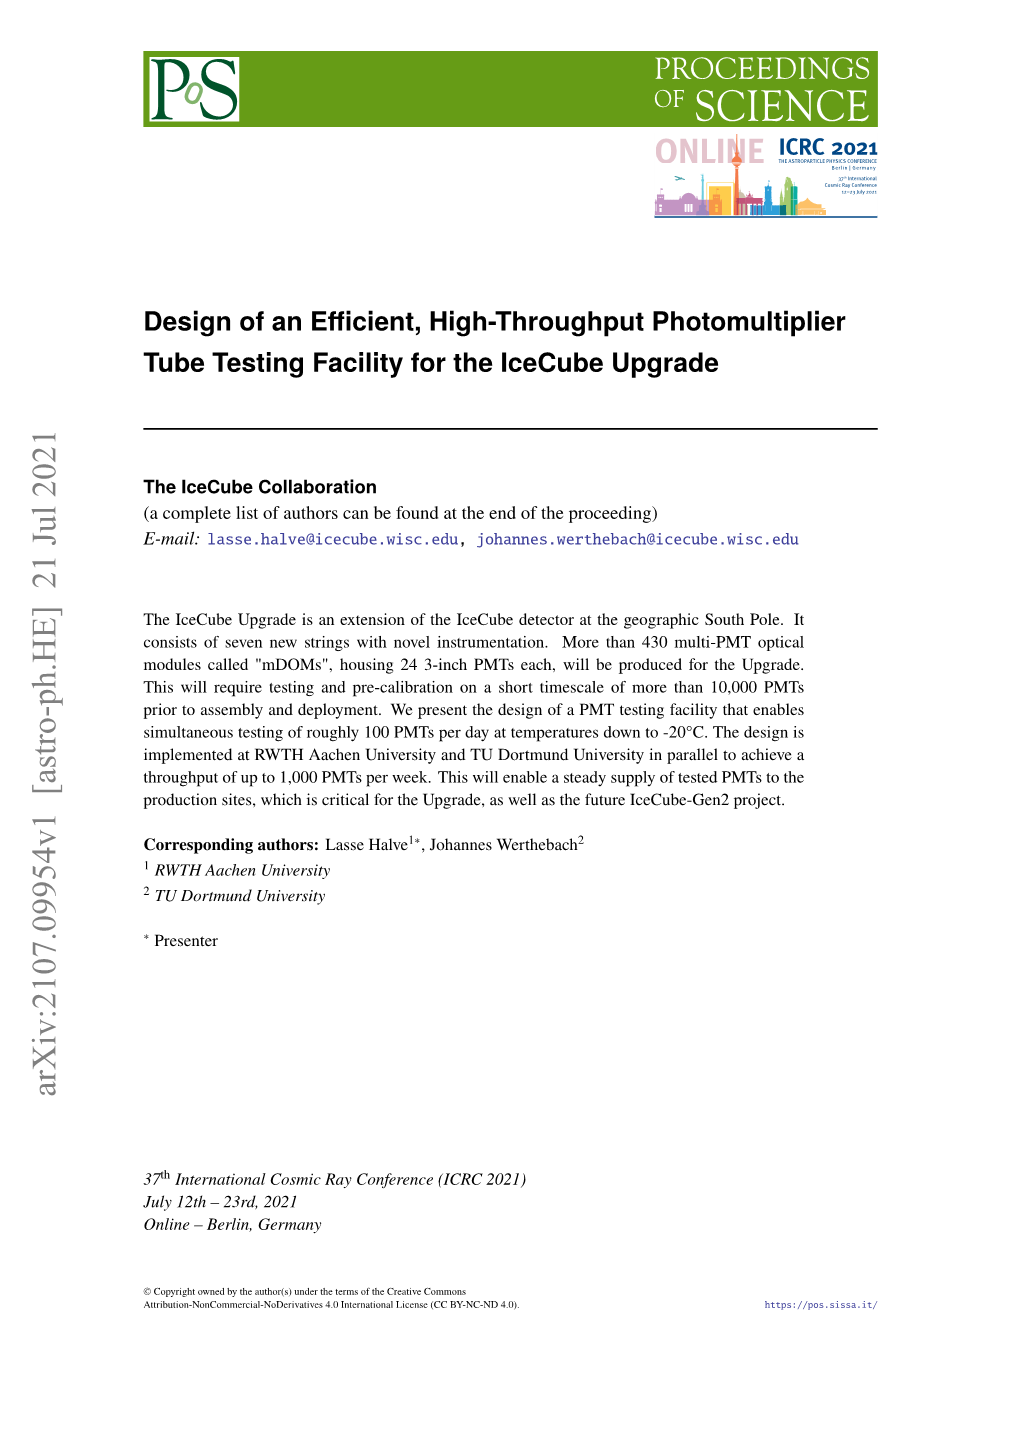 Design of an Efficient, High-Throughput Photomultiplier